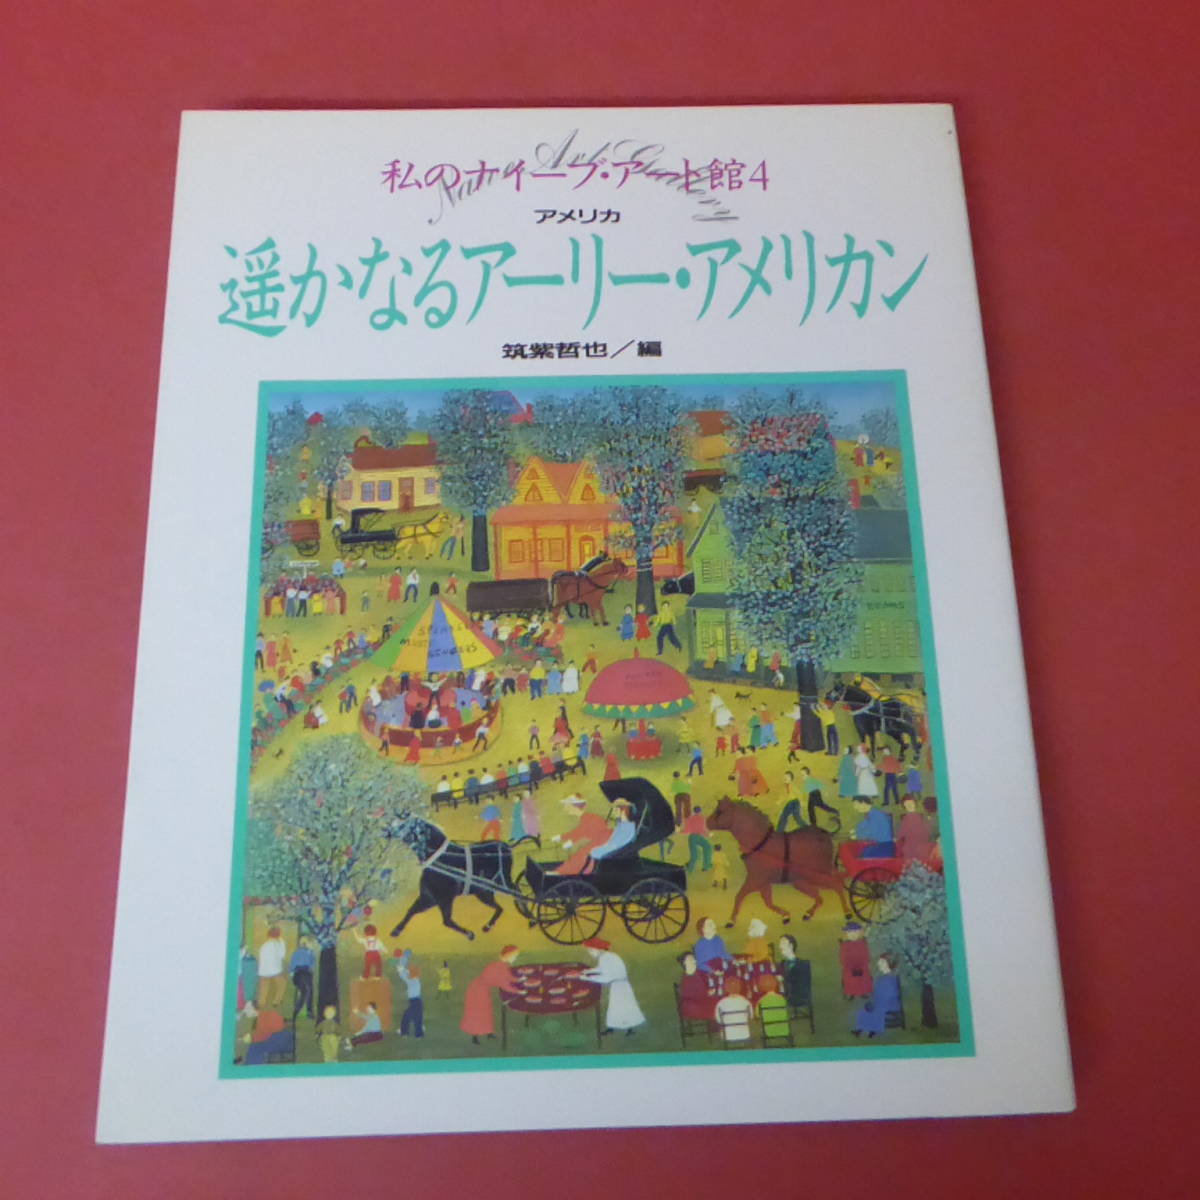 YN2-231208☆Mi Museo de Arte Naif 4: Arte americano temprano desde lugares lejanos, editado por Tetsuya Chikushi, Cuadro, Libro de arte, Recopilación, Catalogar